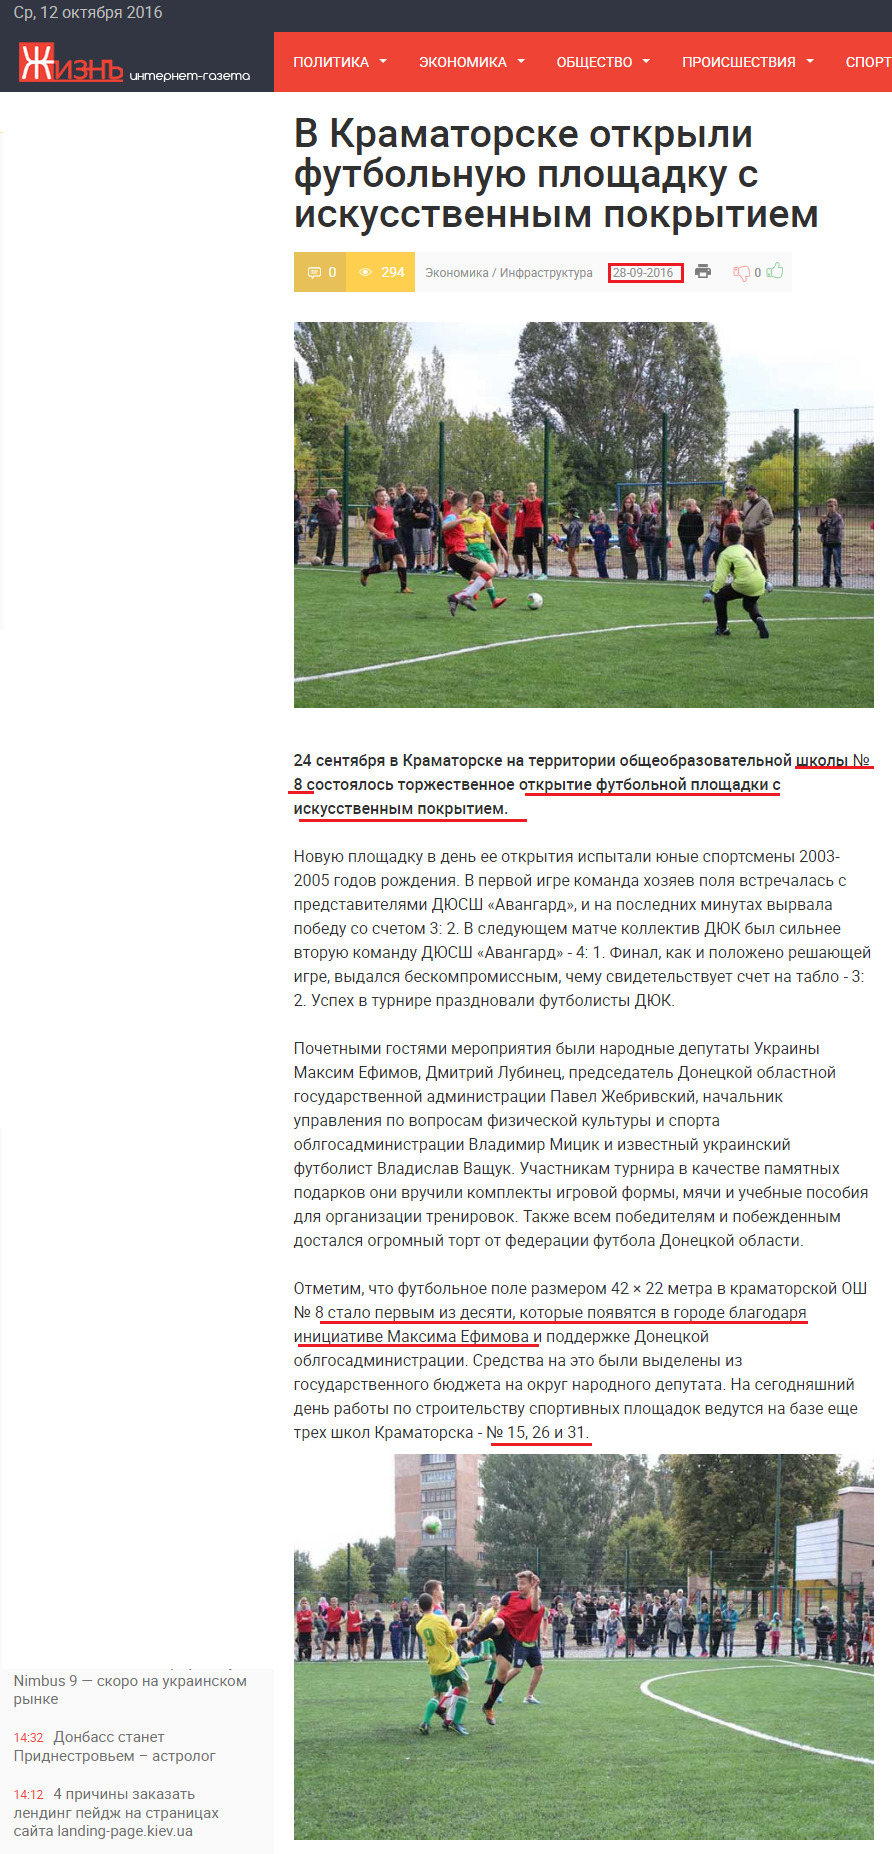 http://lifedon.com.ua/economy/infrastructure/32404-v-kramatorske-otkryli-futbolnuyu-ploschadku-s-iskusstvennym-pokrytiem.html